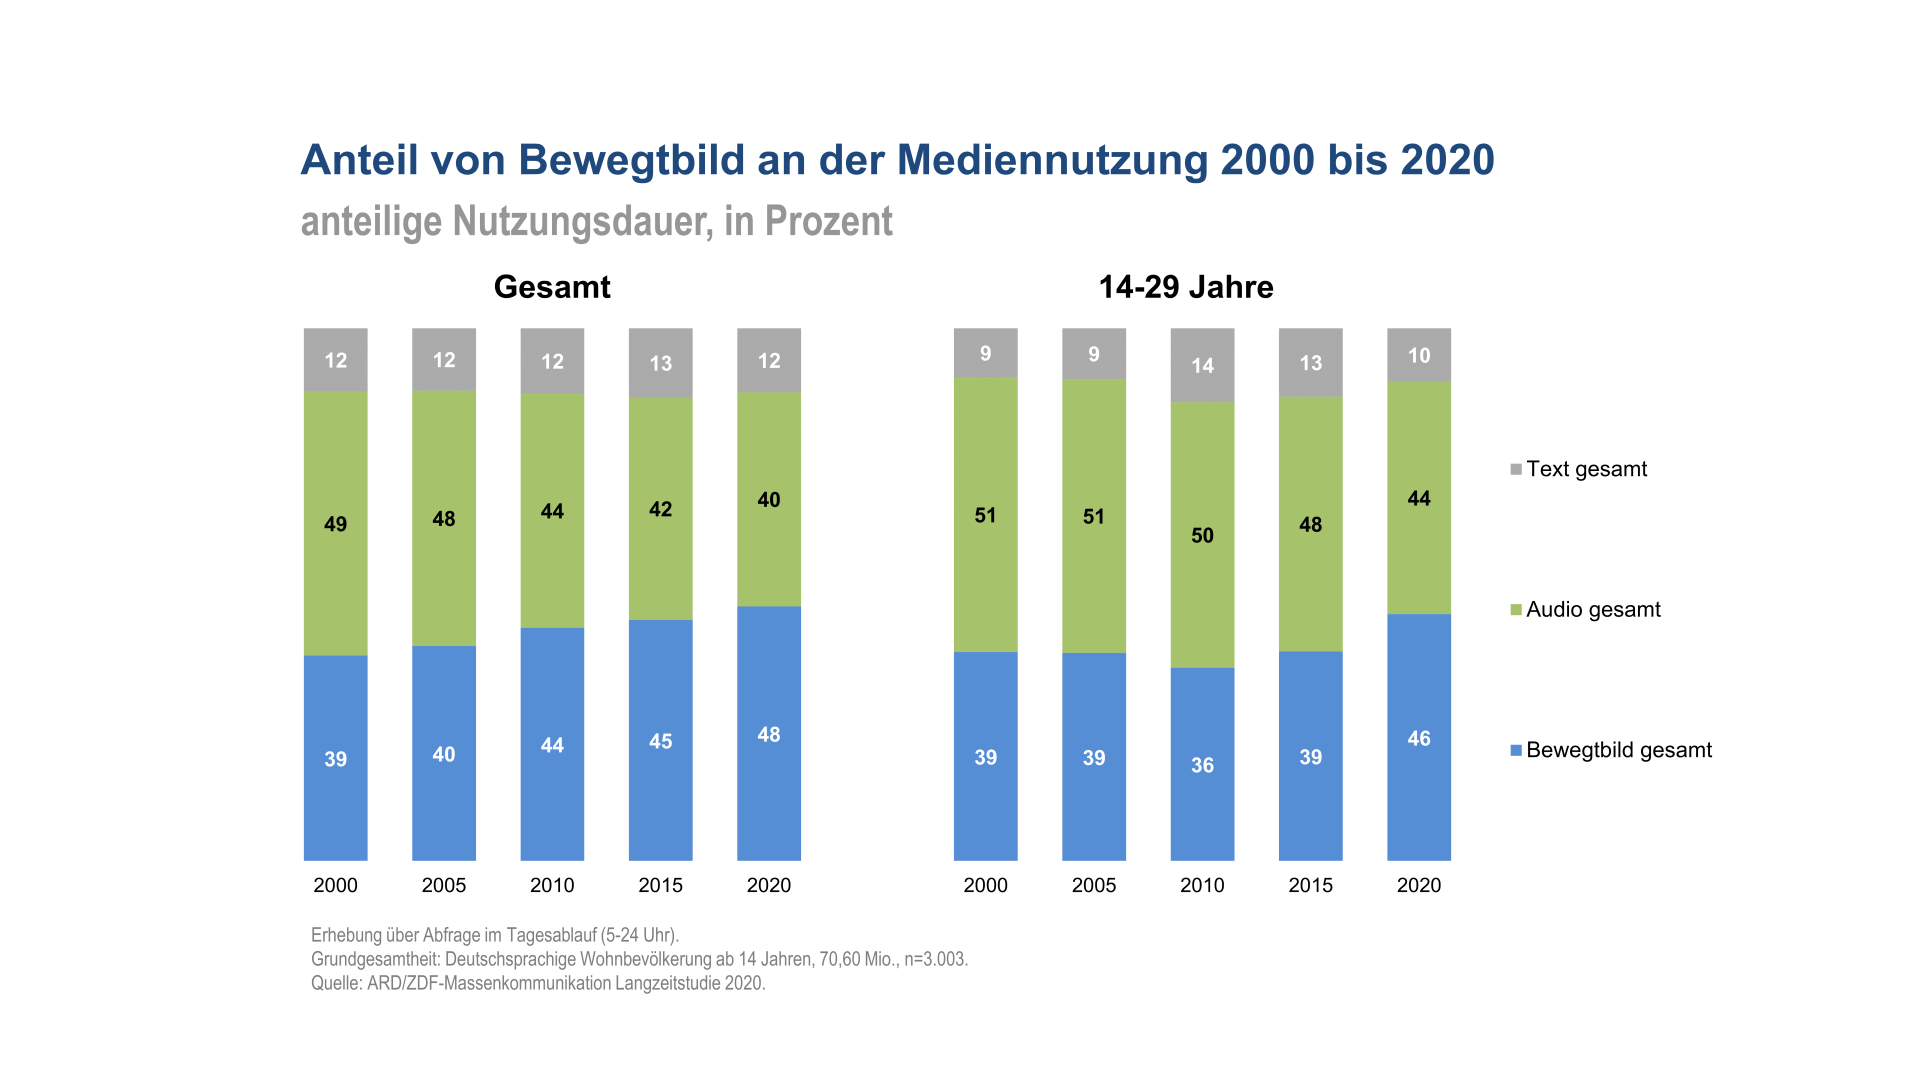 Anteil von Bewegtbild an der Mediennutzung 2000 bis 2020